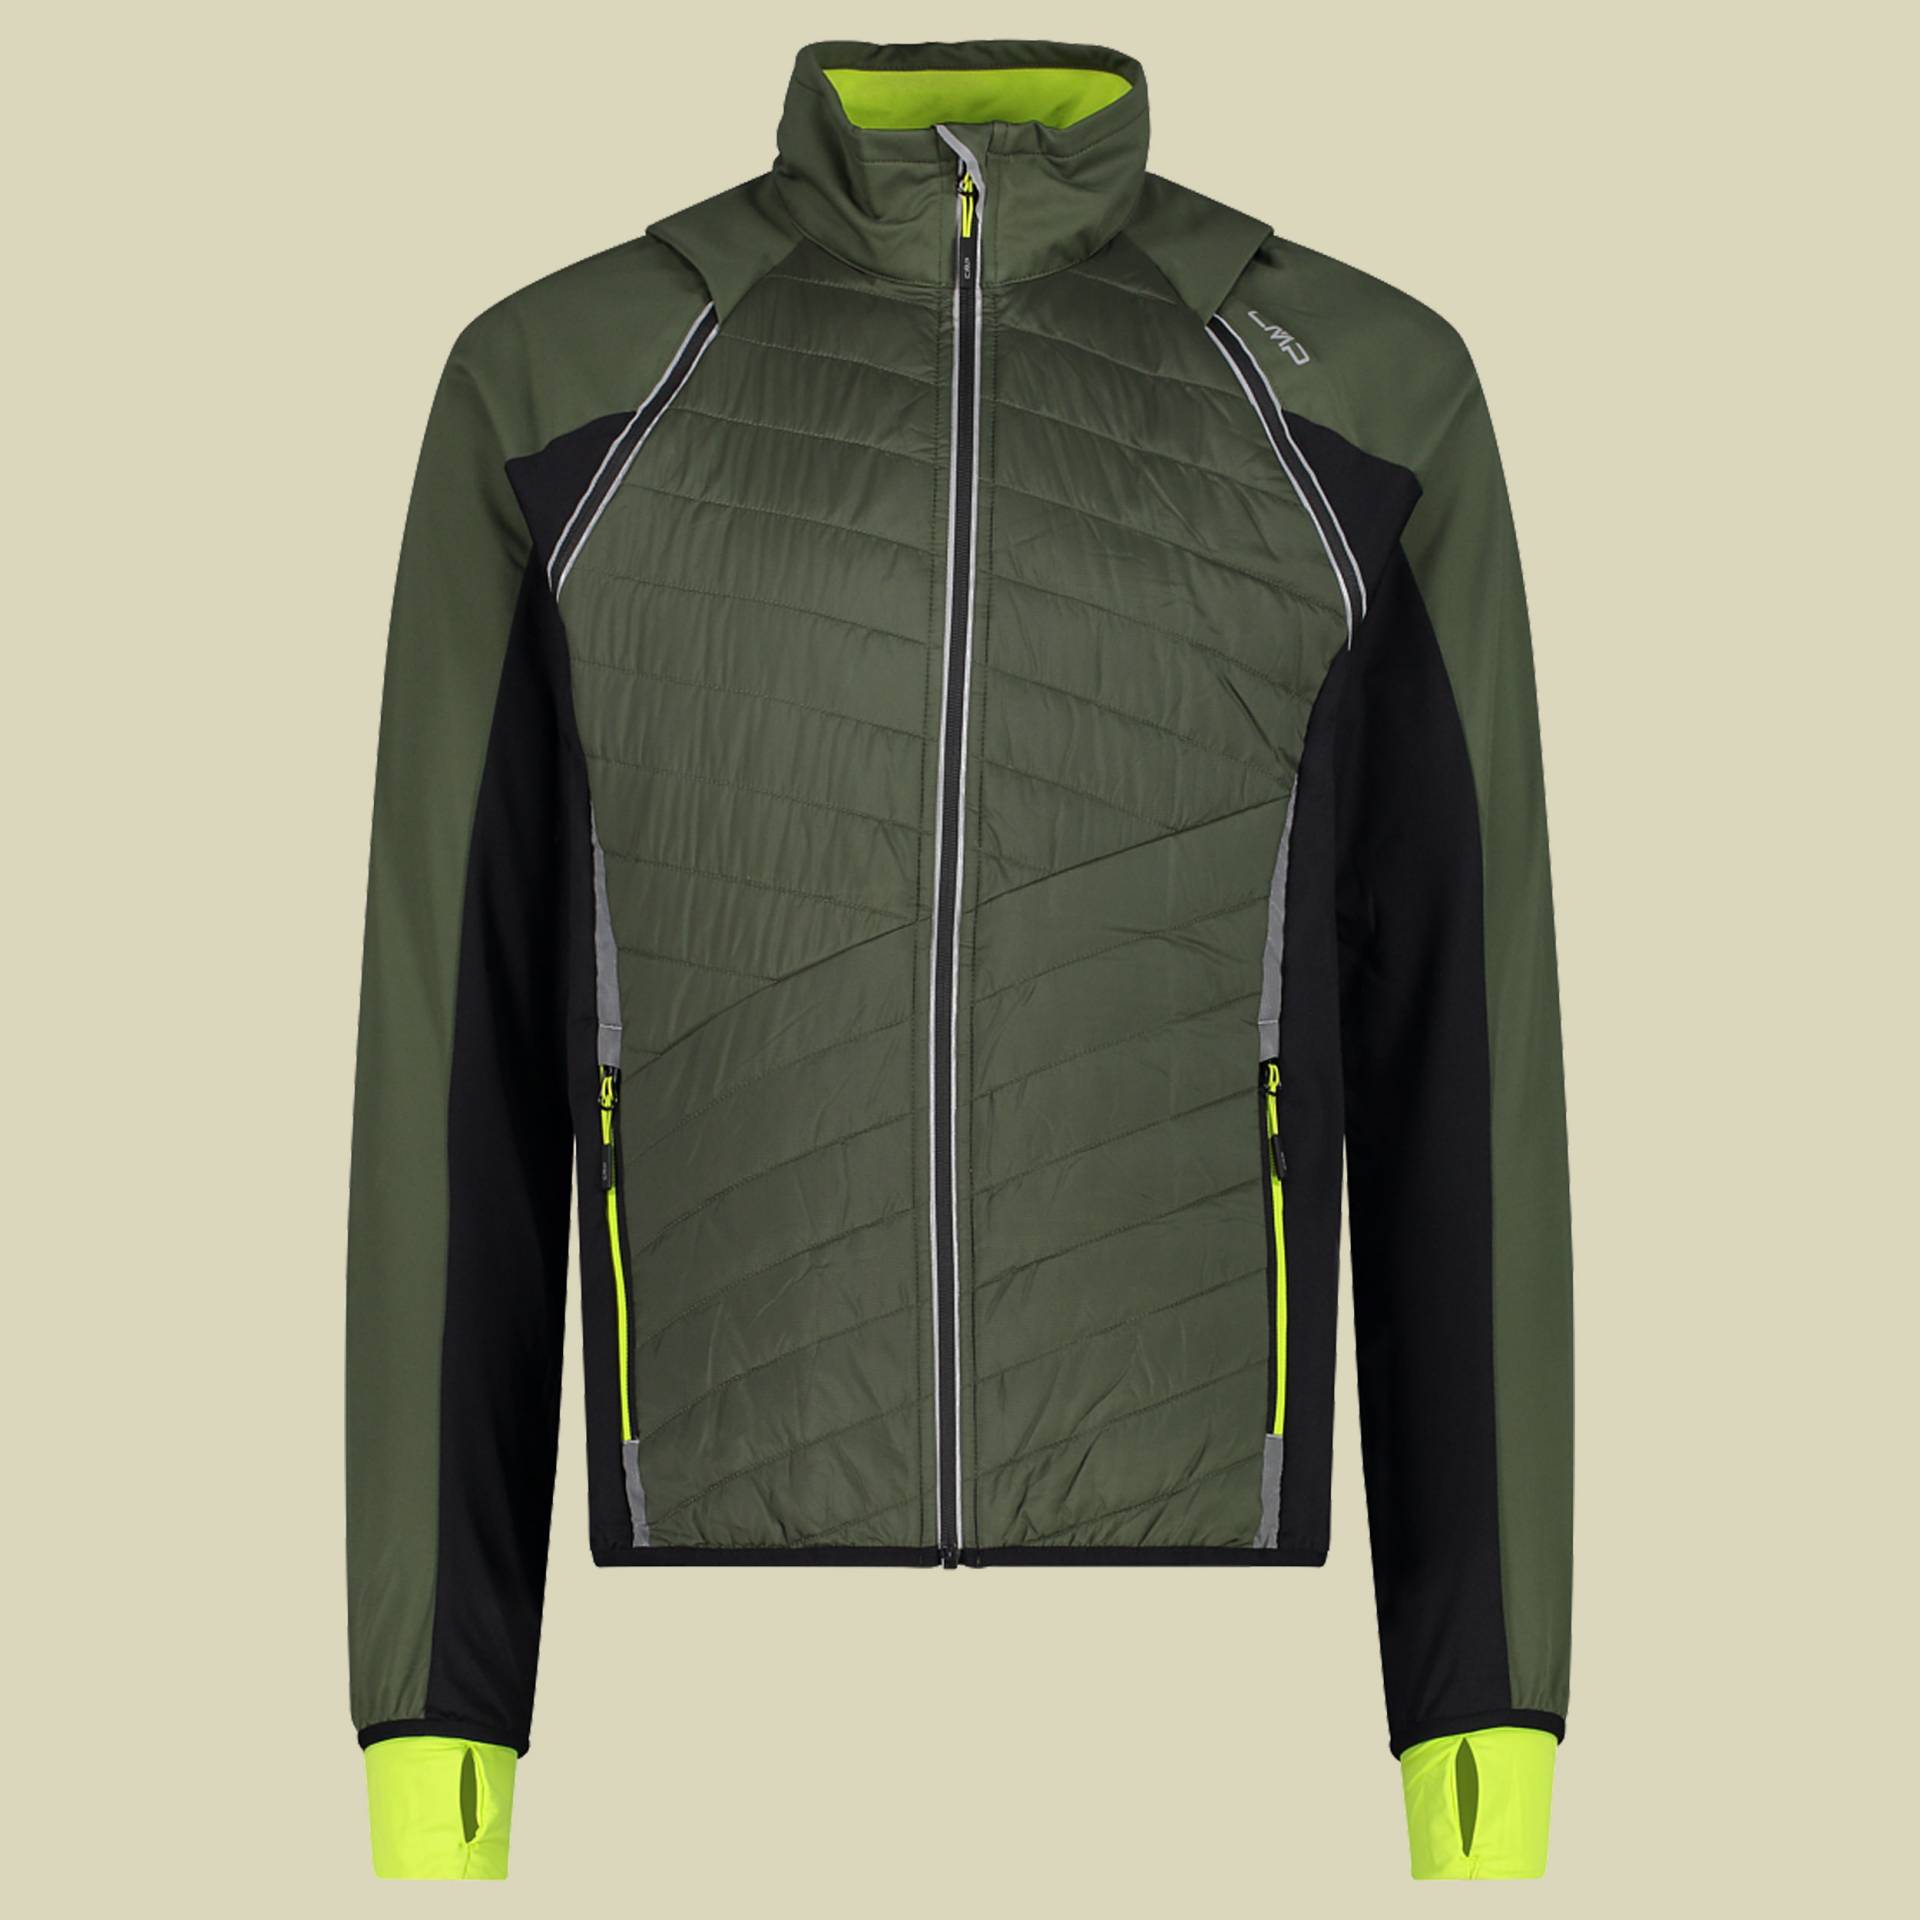 Man Jacket detachable Sleeves 30A2647 Größe 54 Farbe 15EP oil green-nero von CMP